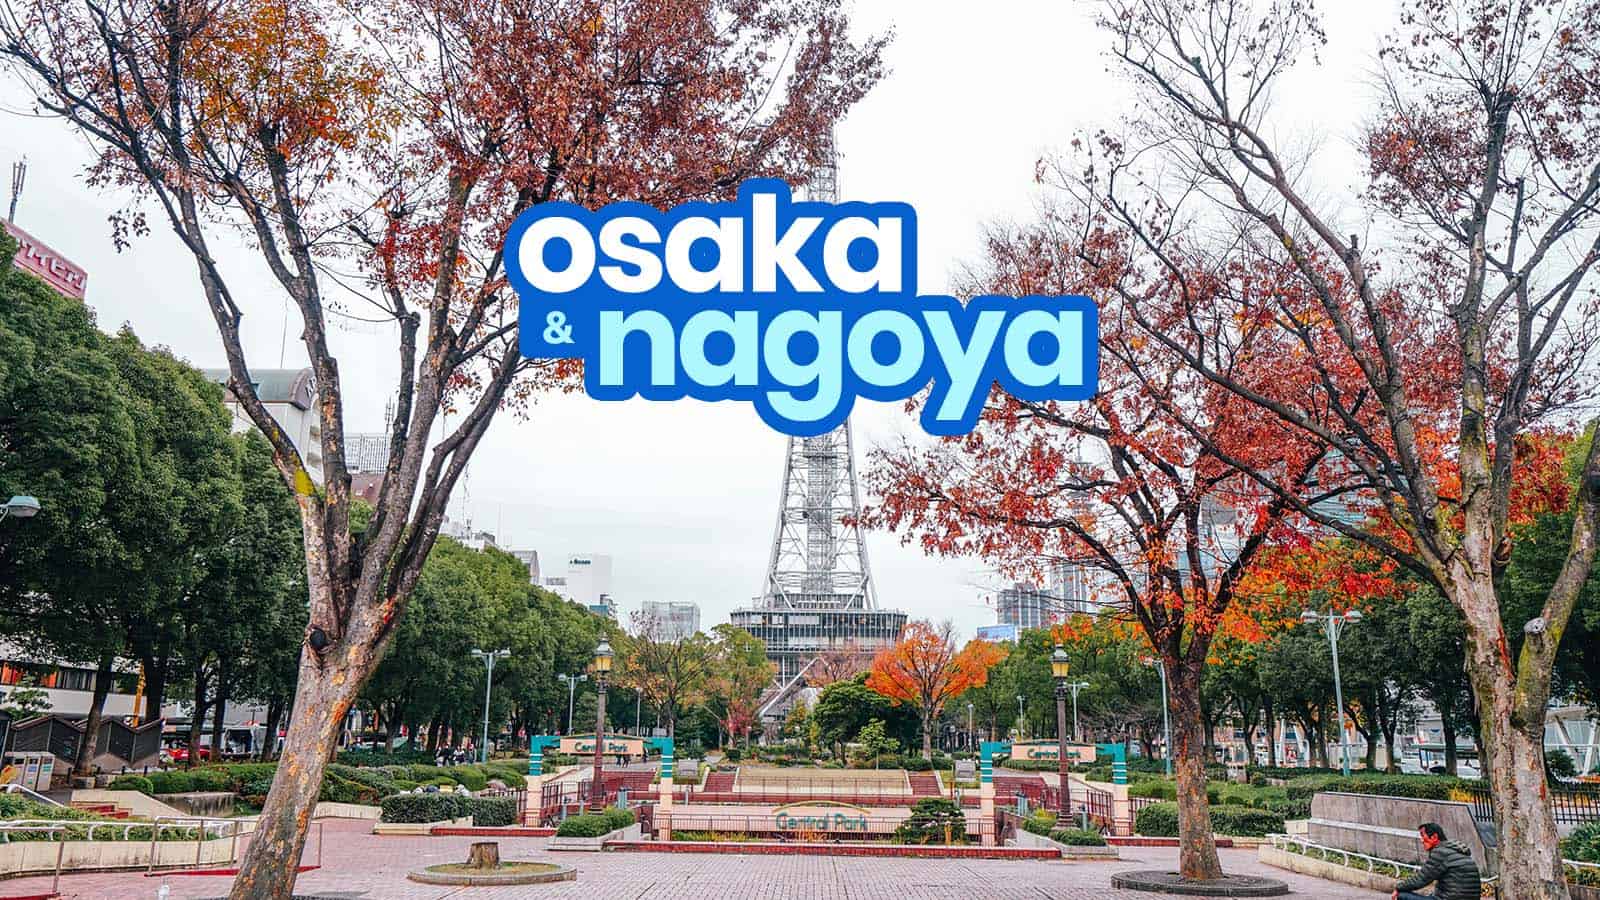 OSAKA TO NAGOYA / NAGOYA TO OSAKA: By Bus & By Train